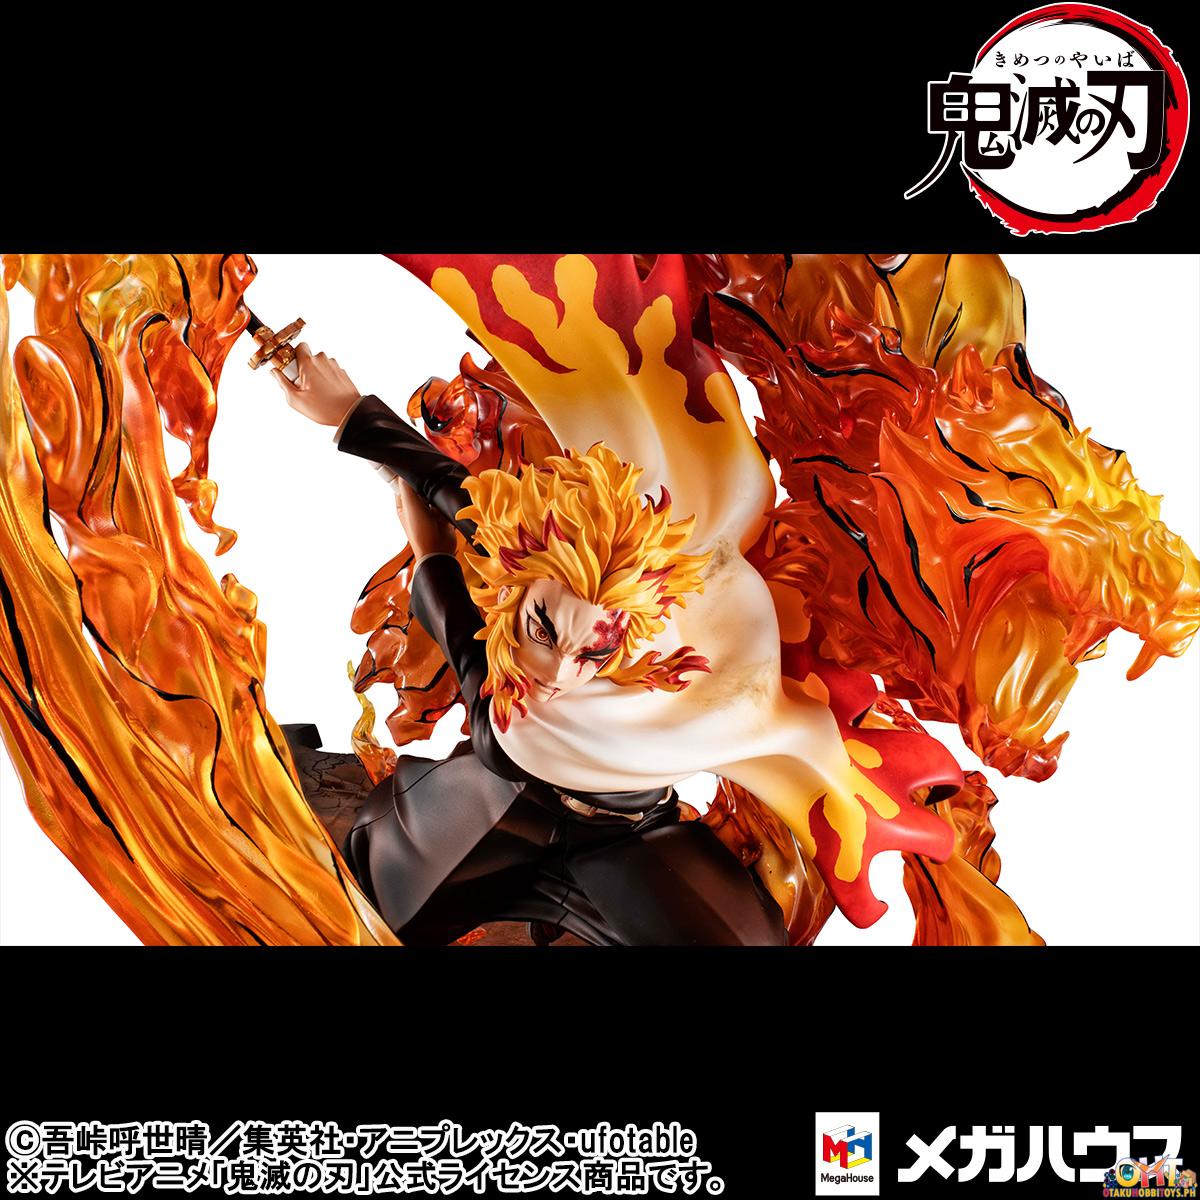 Megahouse Precious G.E.M. Series Demon Slayer: Kimetsu no Yaiba Kyojuro Rengoku Fifth Form: Flame Tiger